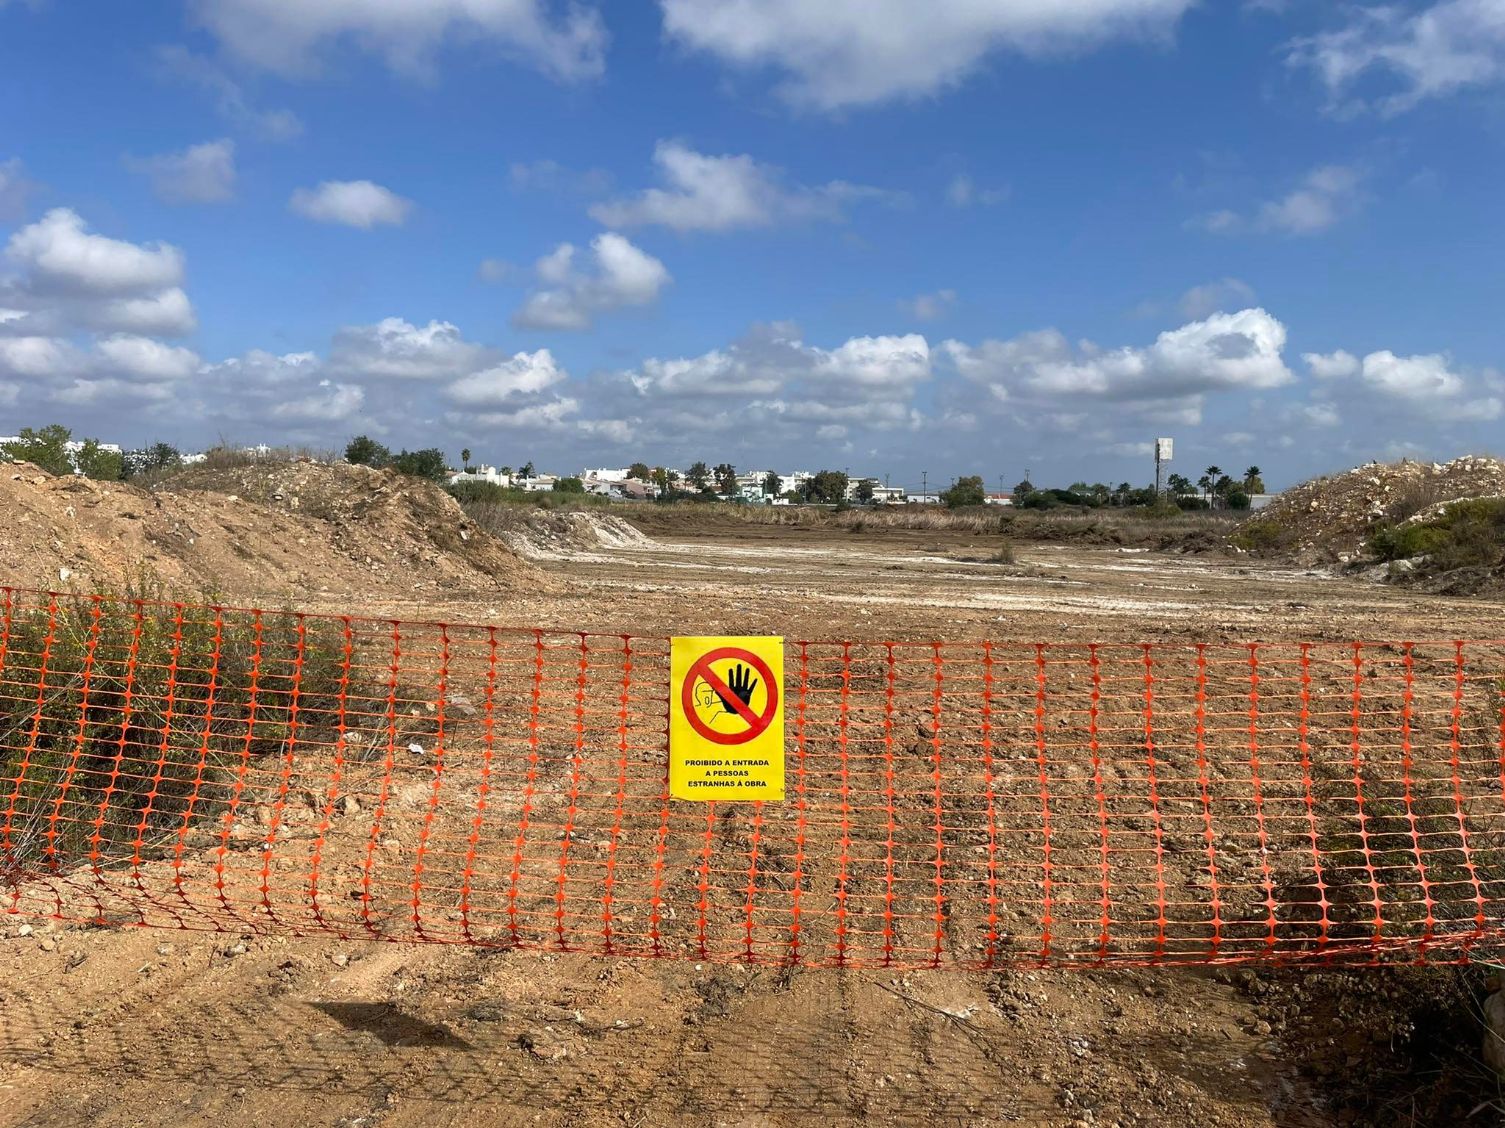 Está iminente a destruição da zona húmida da Alagoas Brancas em Lagoa, no Algarve